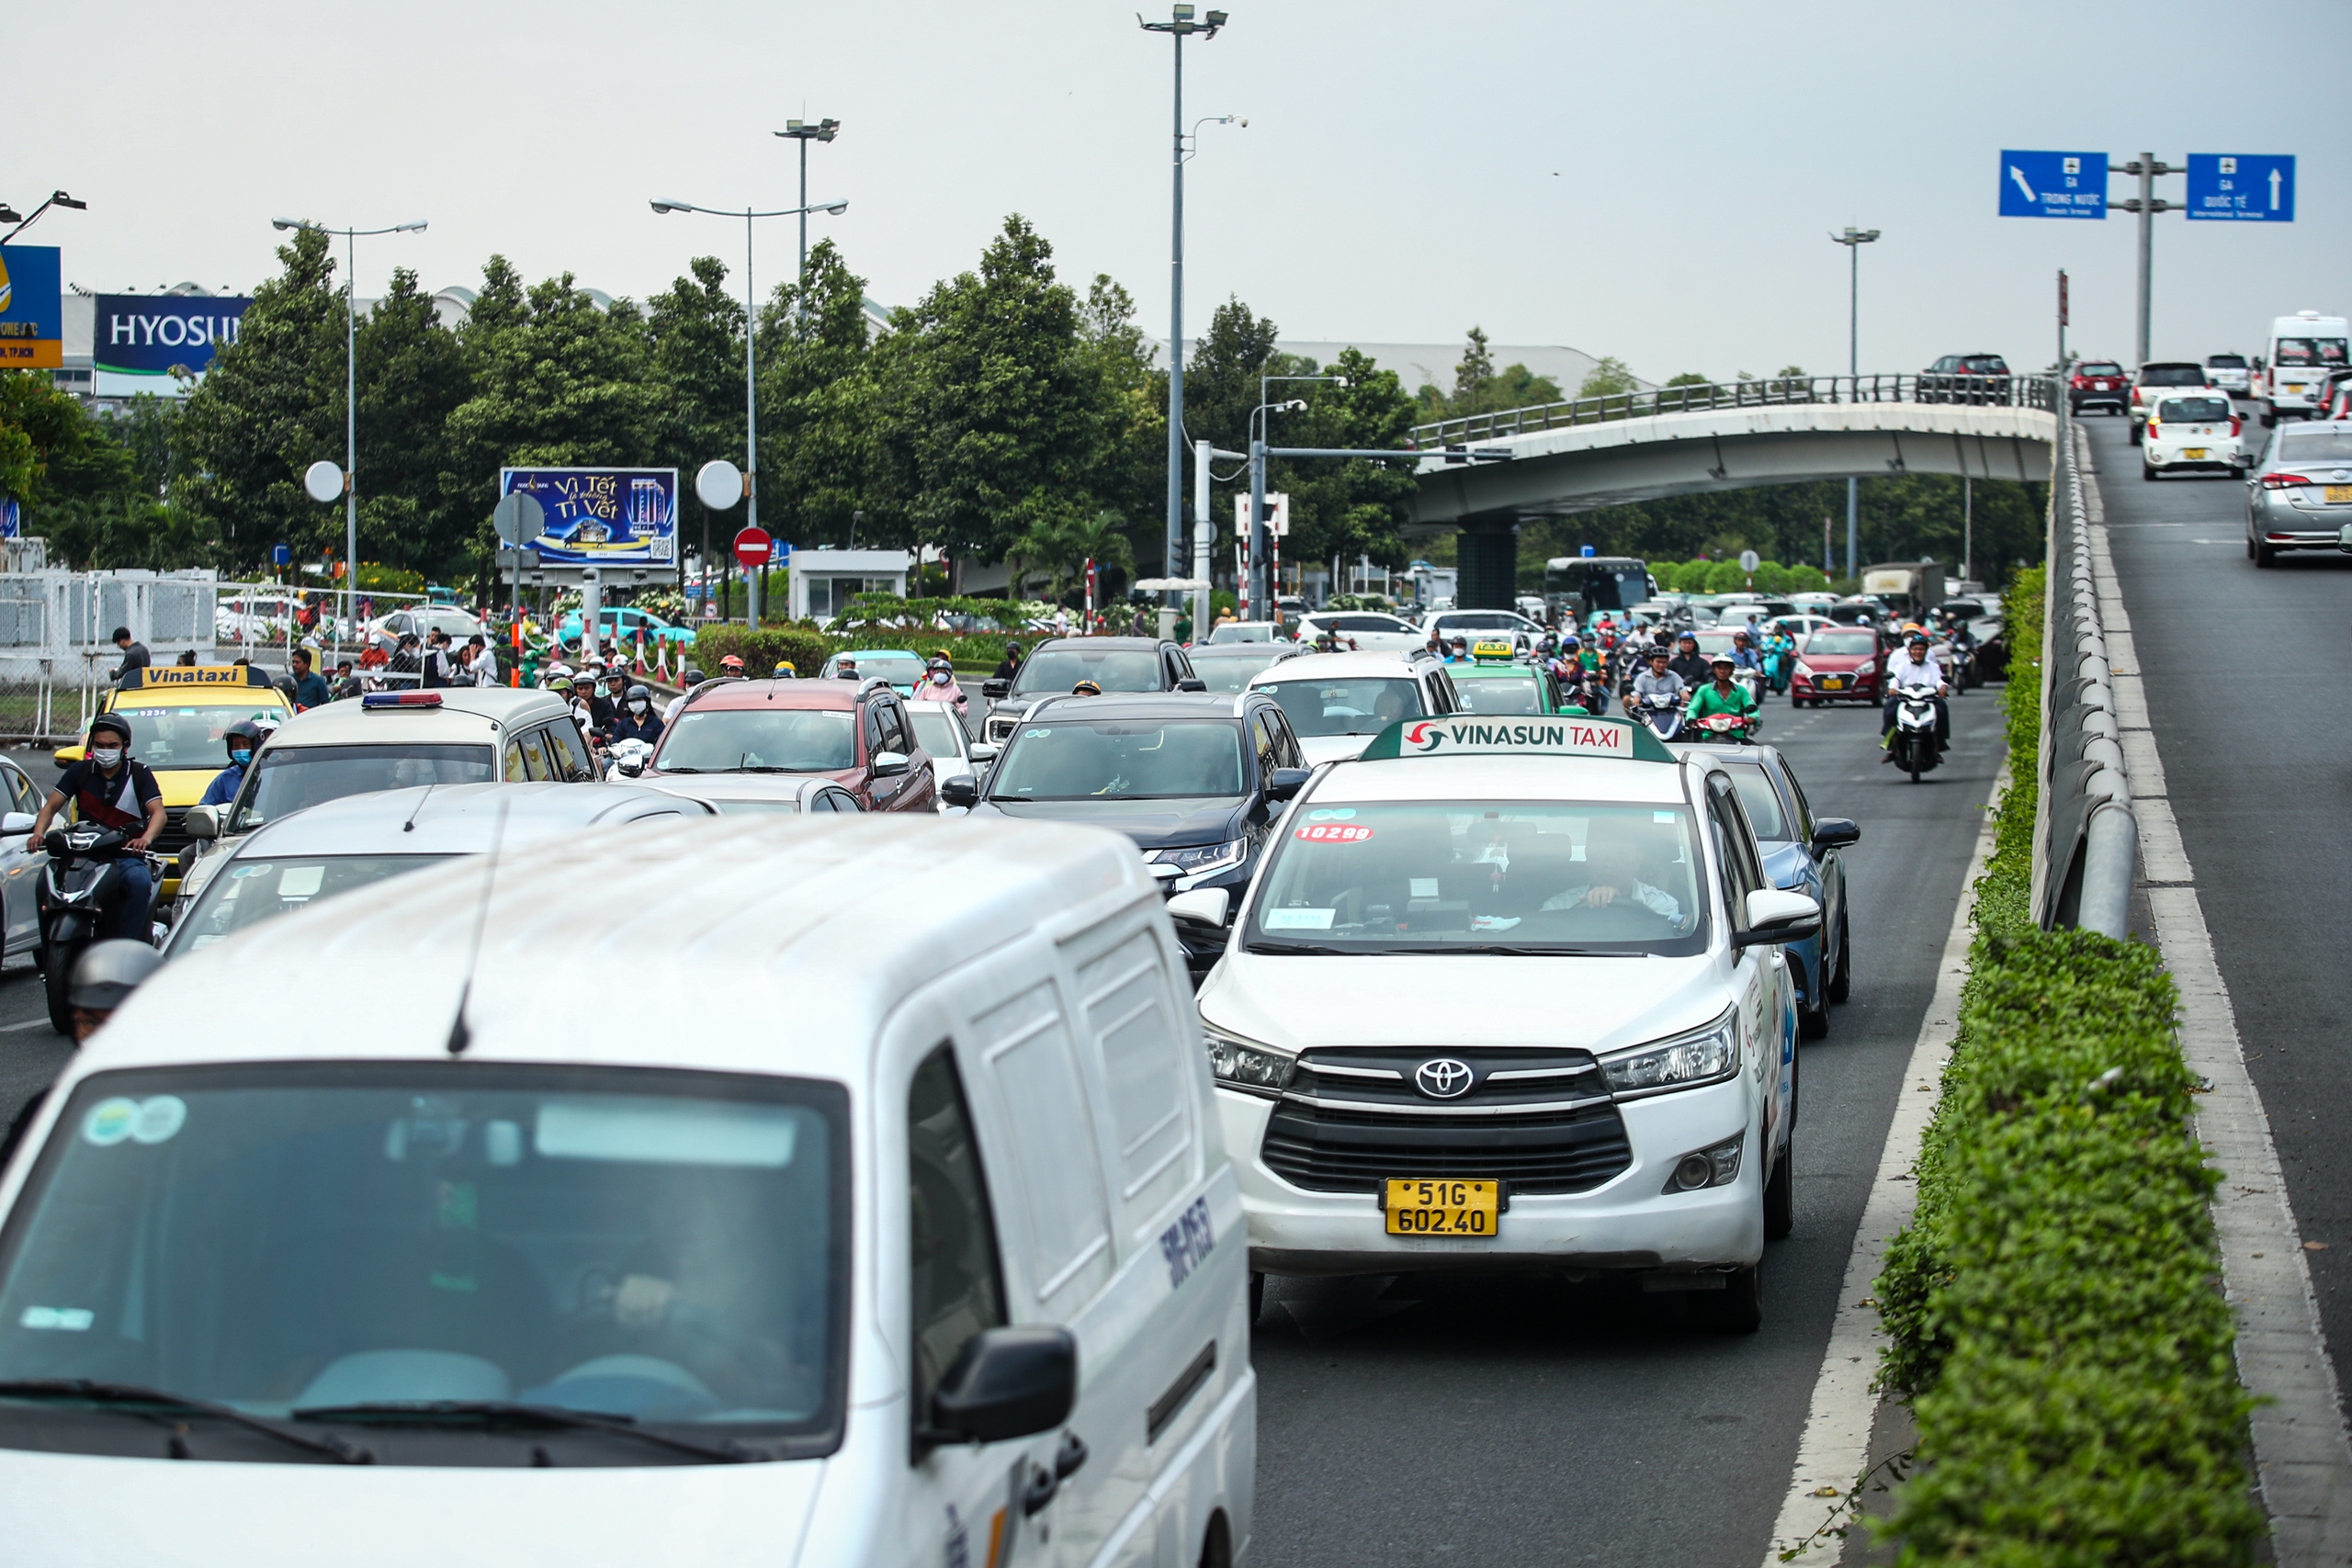 26 tháng chạp: Cửa ngõ sân bay Tân Sơn Nhất đông nghẹt xe cộ, có lúc kẹt cứng- Ảnh 2.